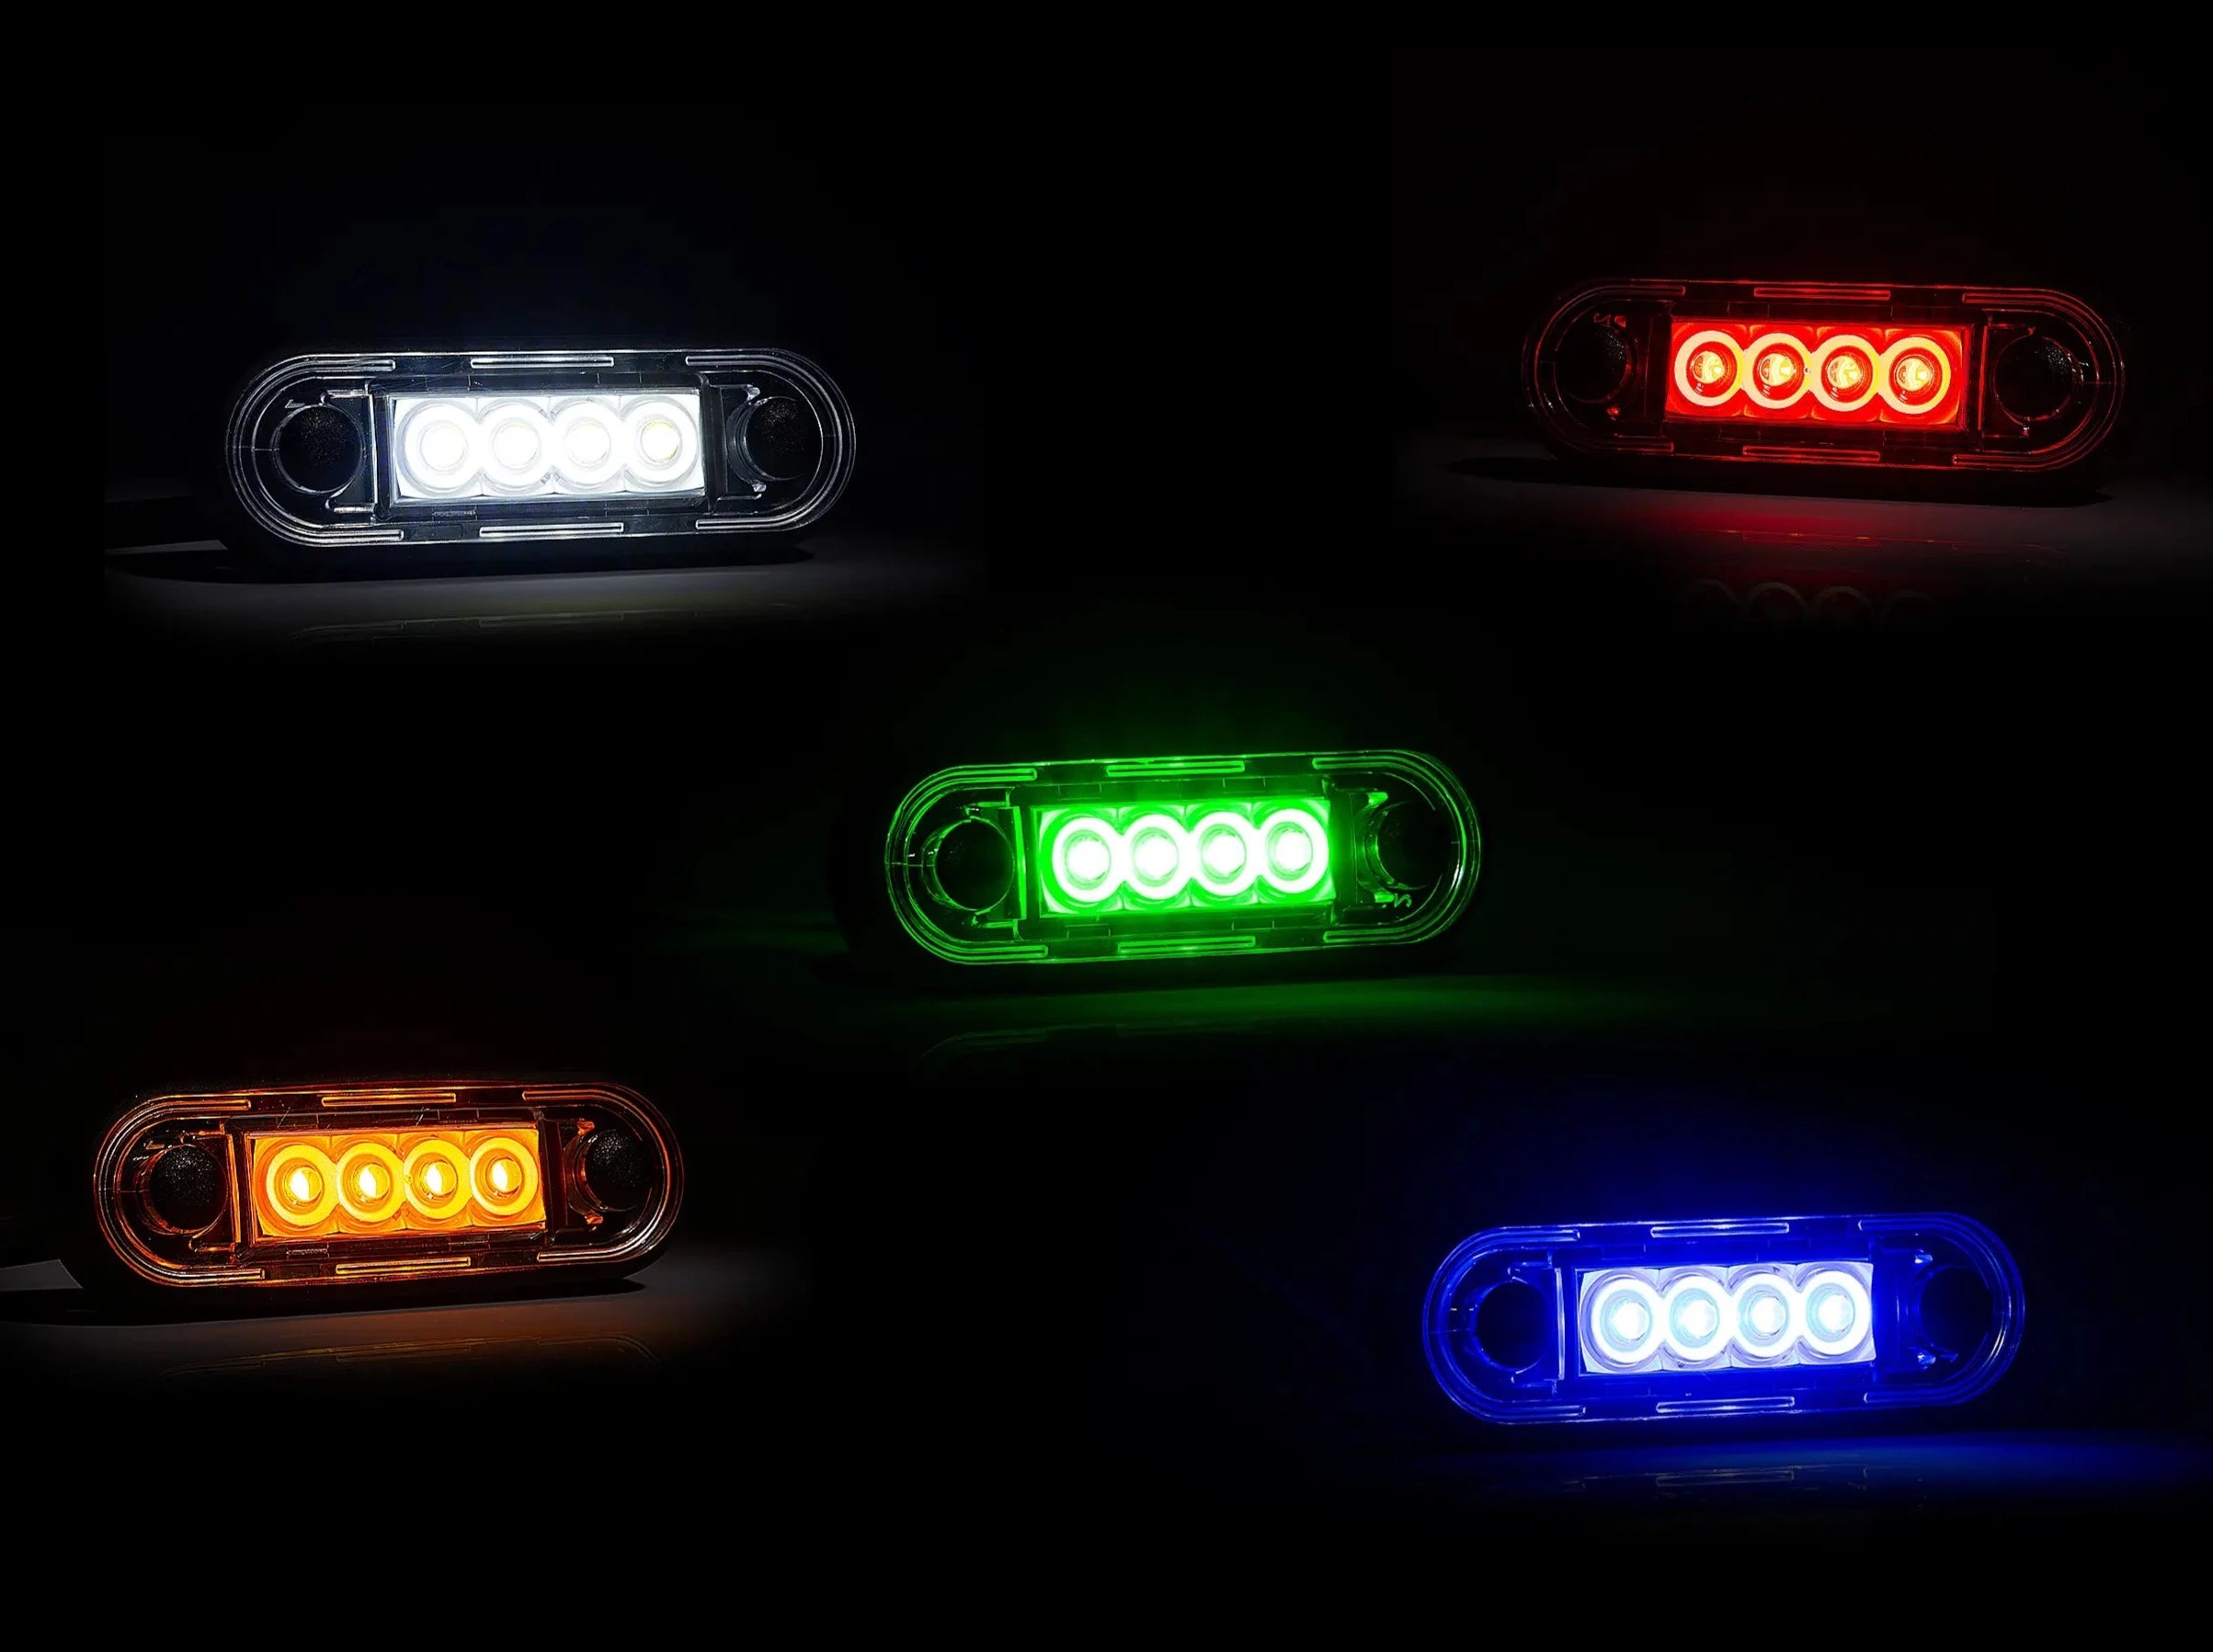 Luz marcadora LED premium para barras de caminhão e barras de touro - spo-cs-disabled - spo-default - spo-disabled - spo-notify-me-disa